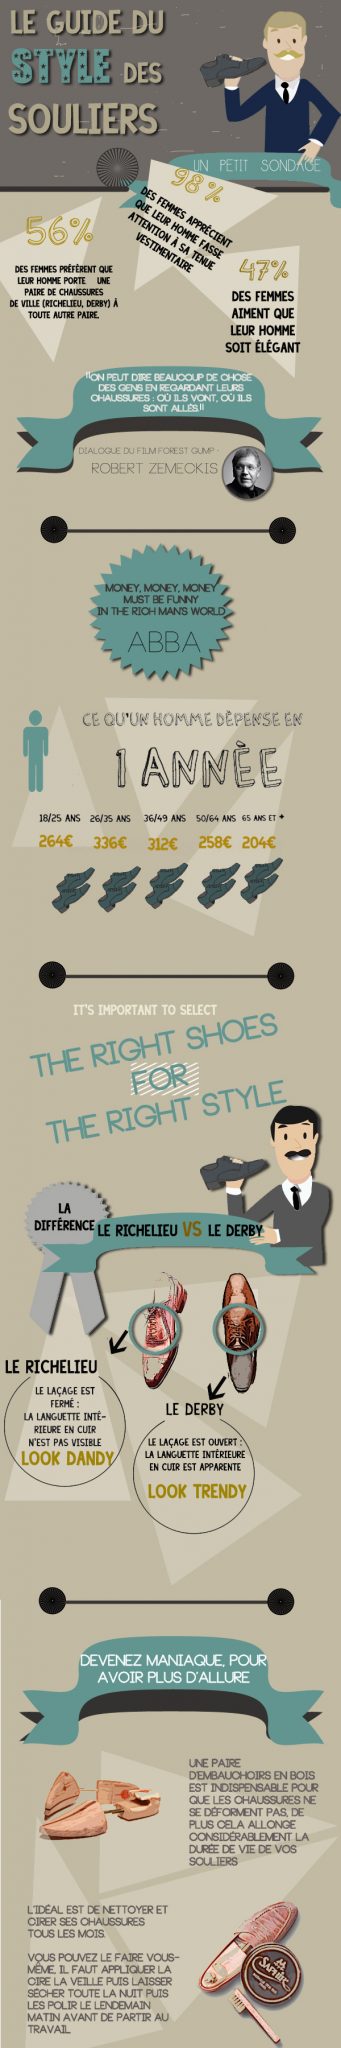 Le guide du style des souliers